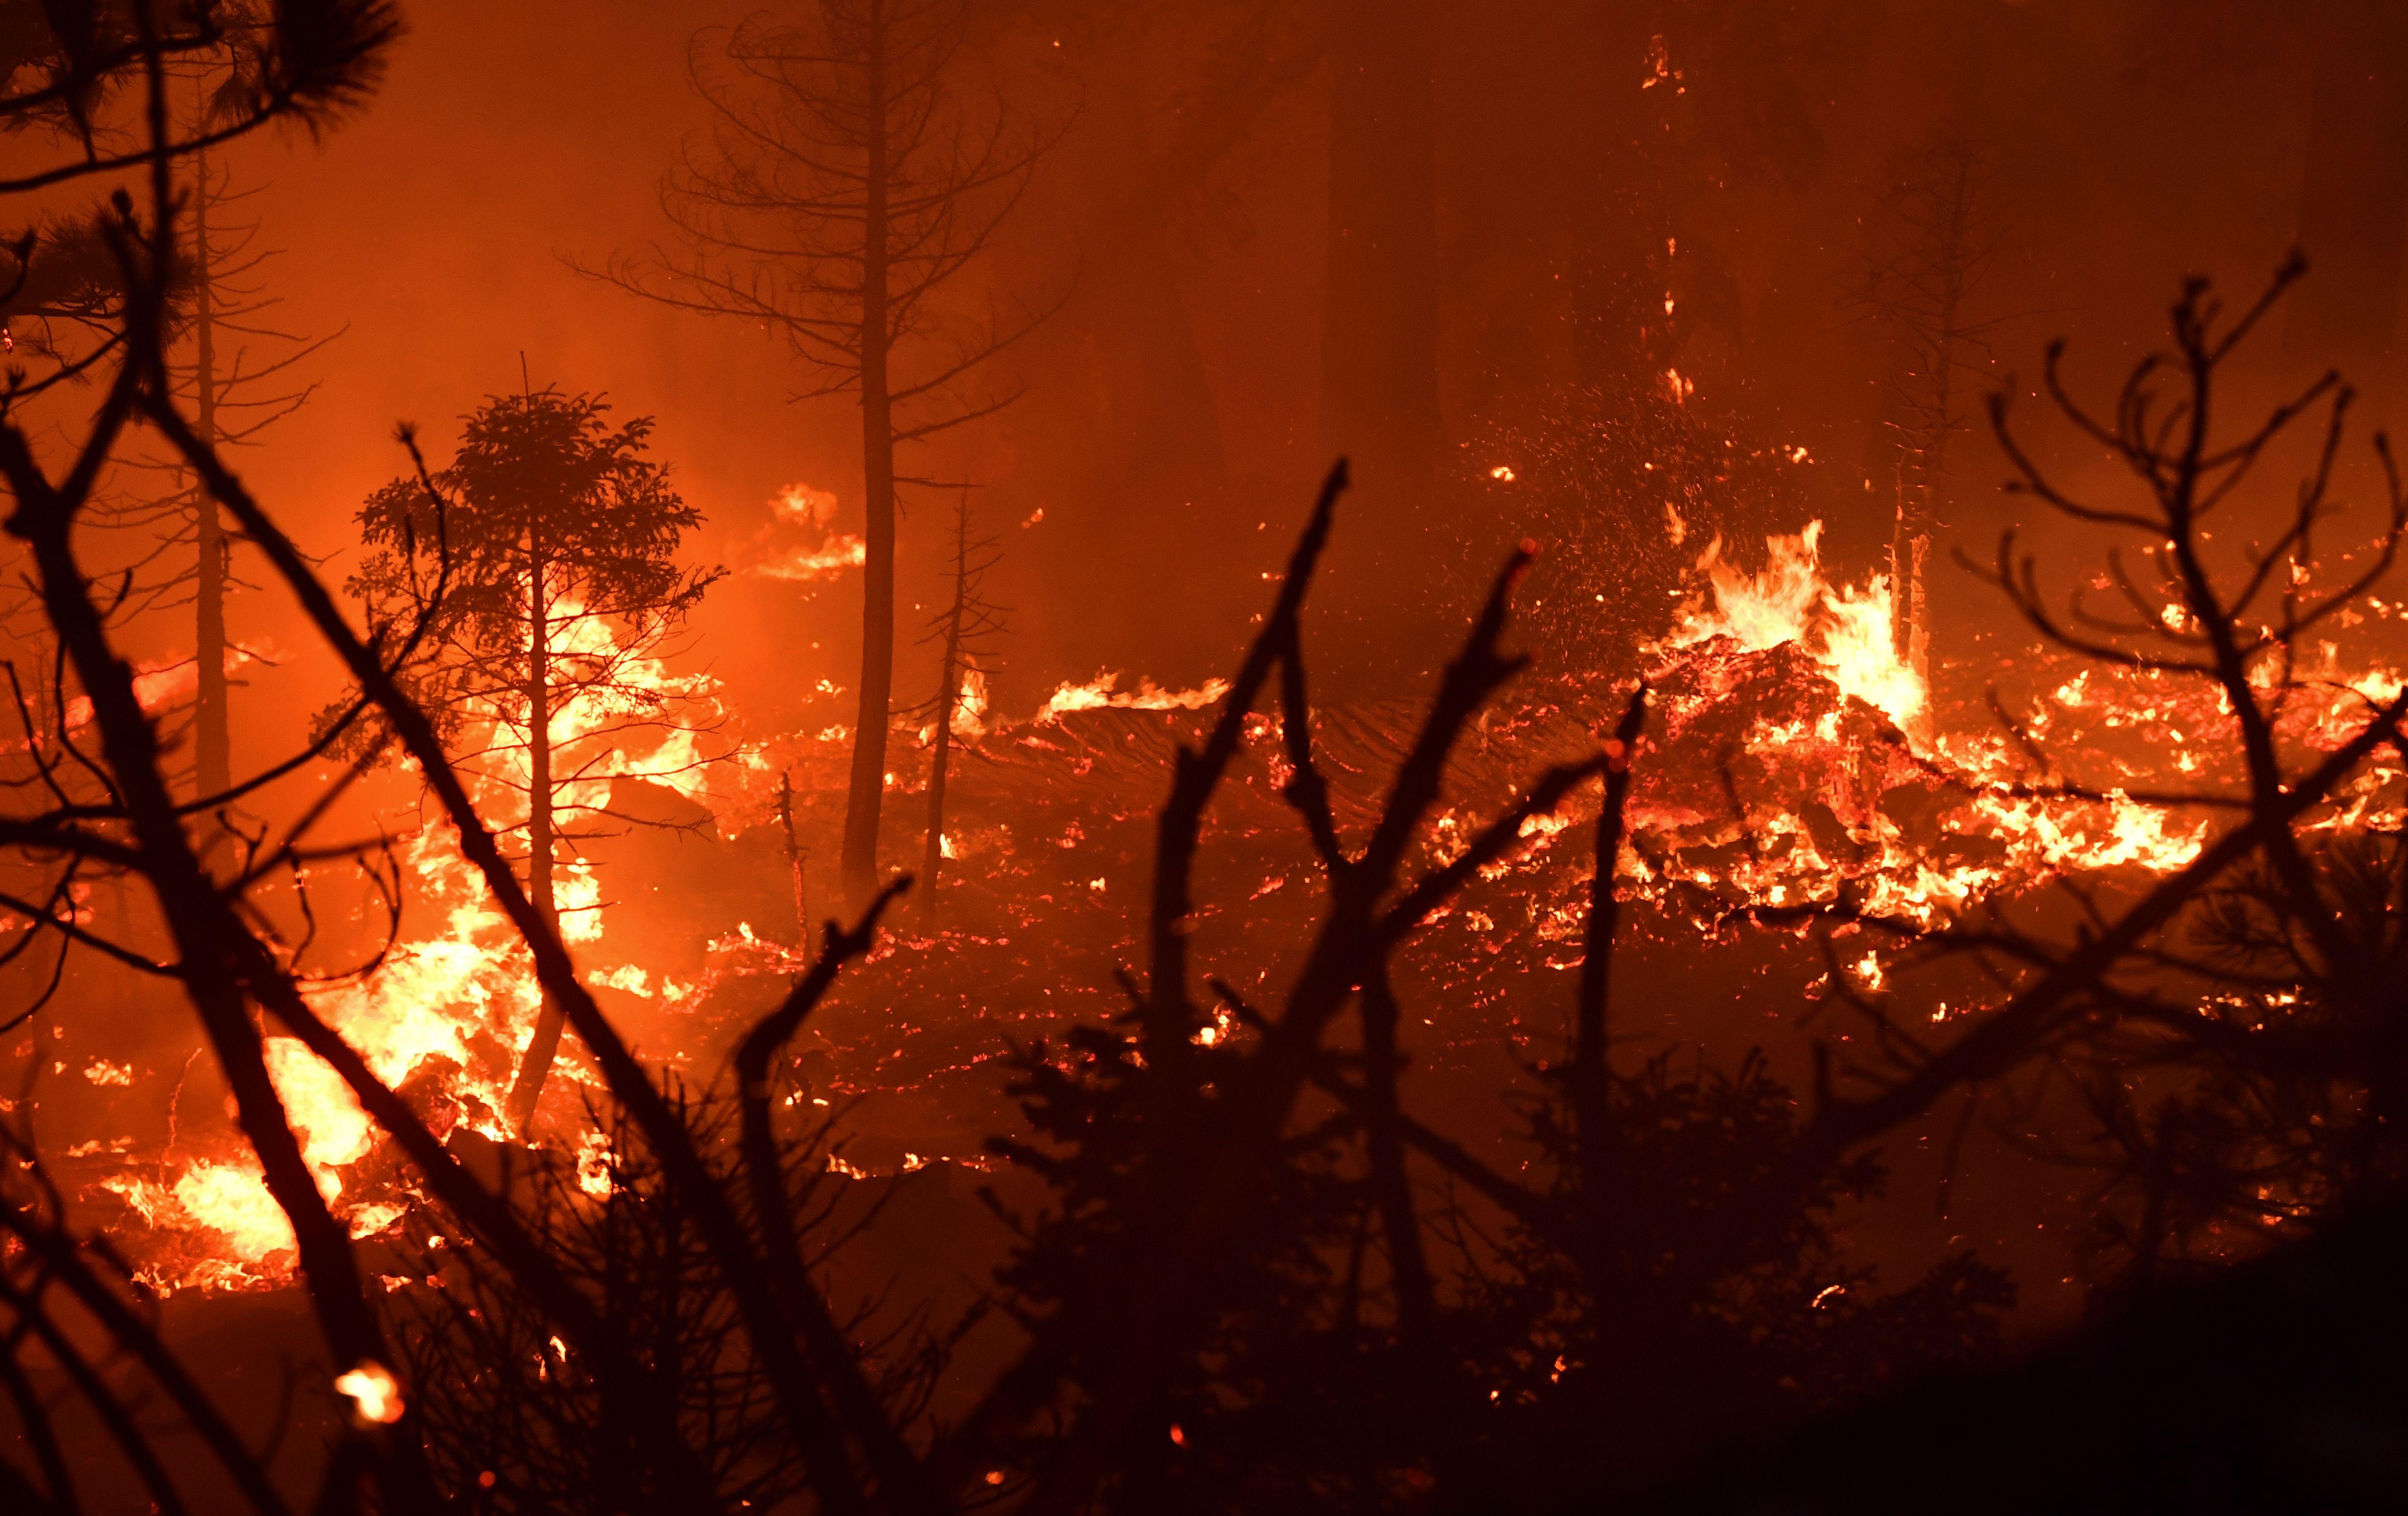 加州秋季乾燥 消防局提醒注意防火